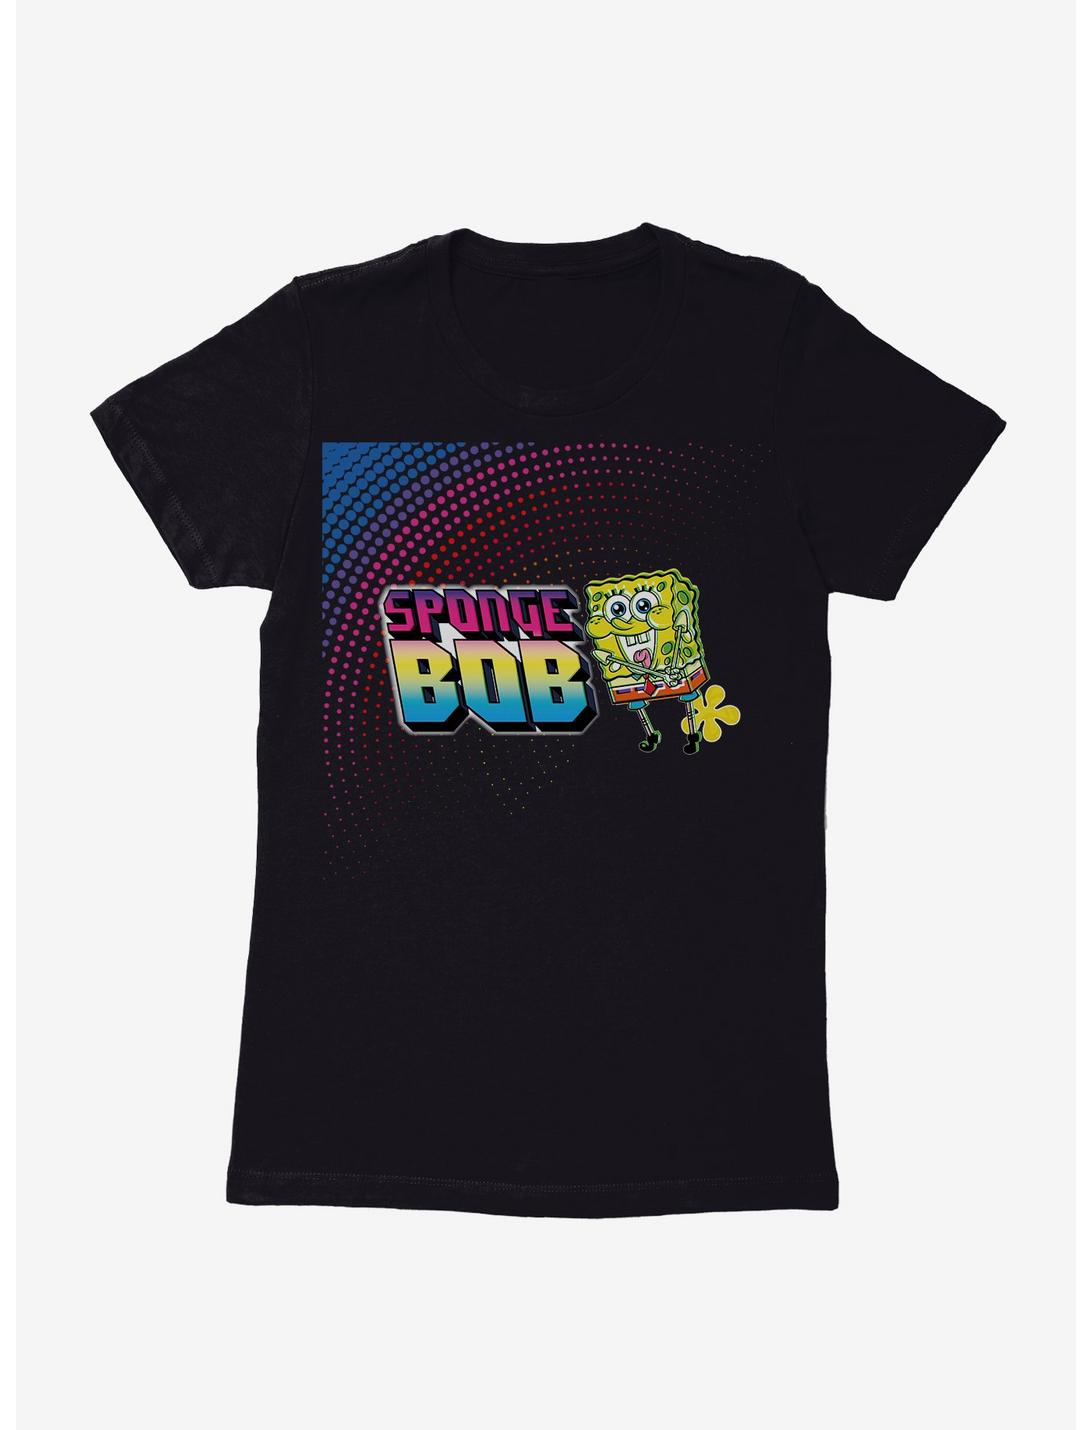 SpongeBob SquarePants Neon Dots Womens T-Shirt, BLACK, hi-res